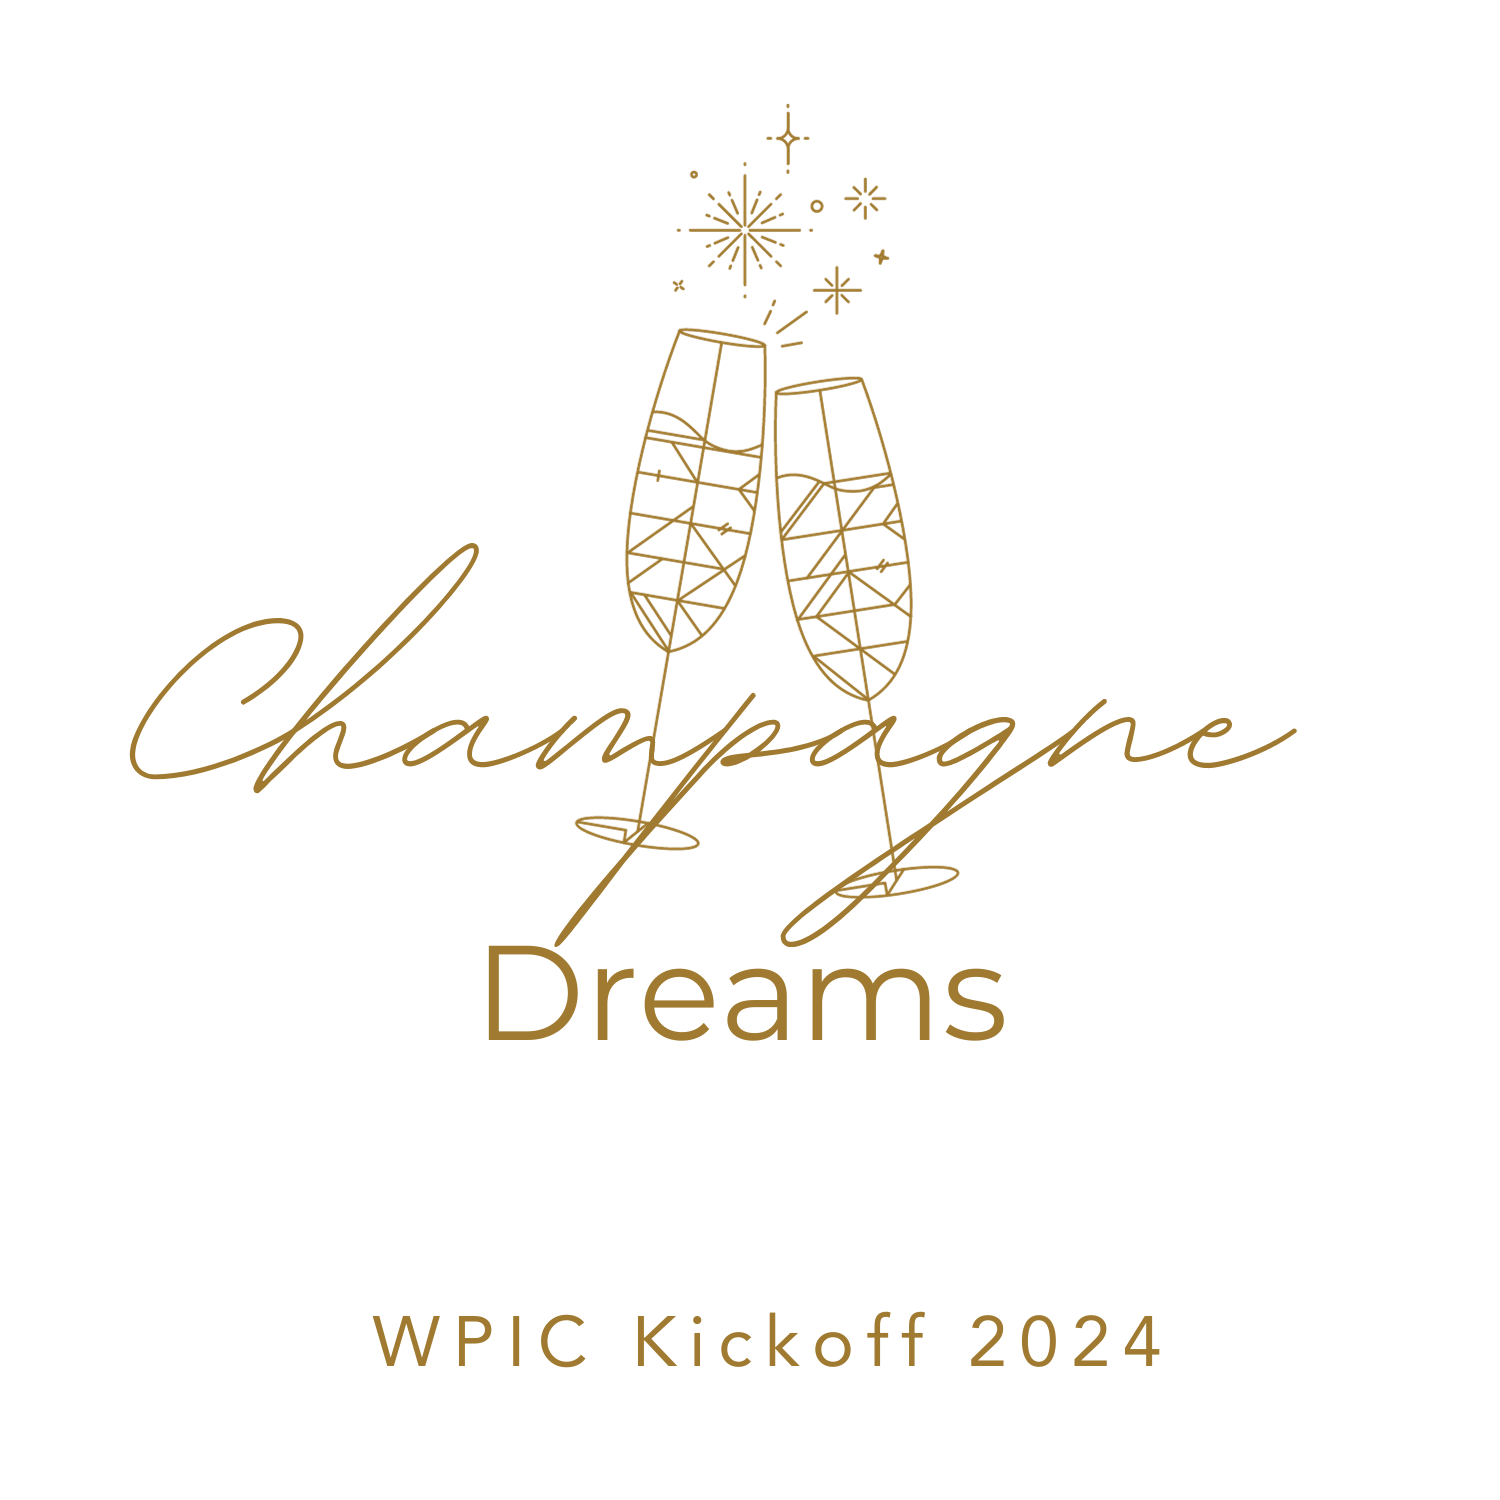 WPIC Kickoff and wedding awards logo